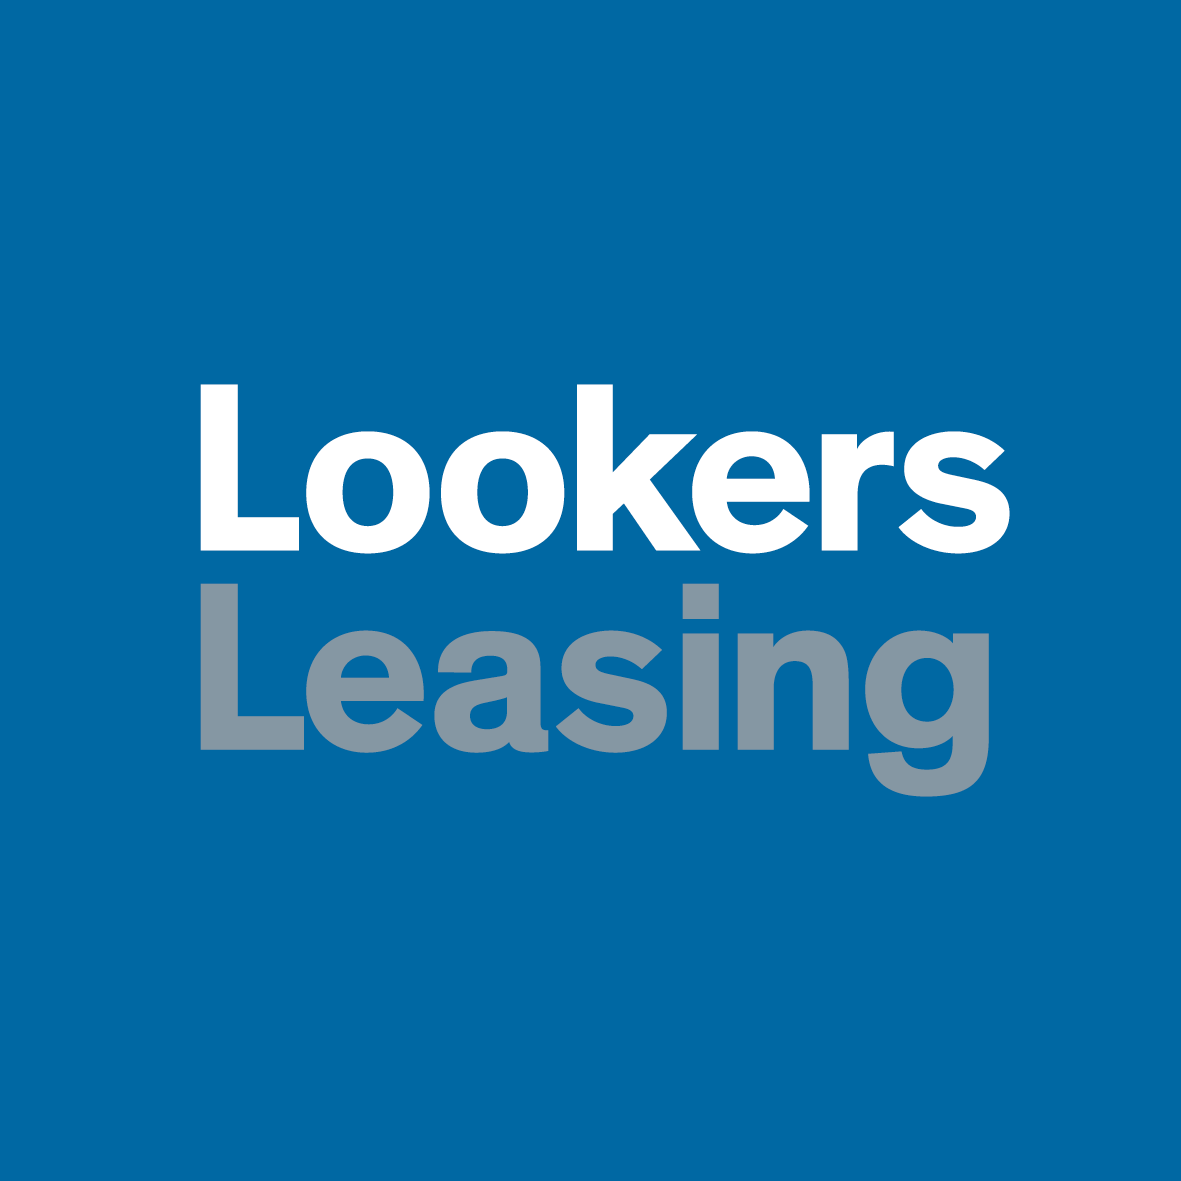 Lookers Leasing LOGOS2